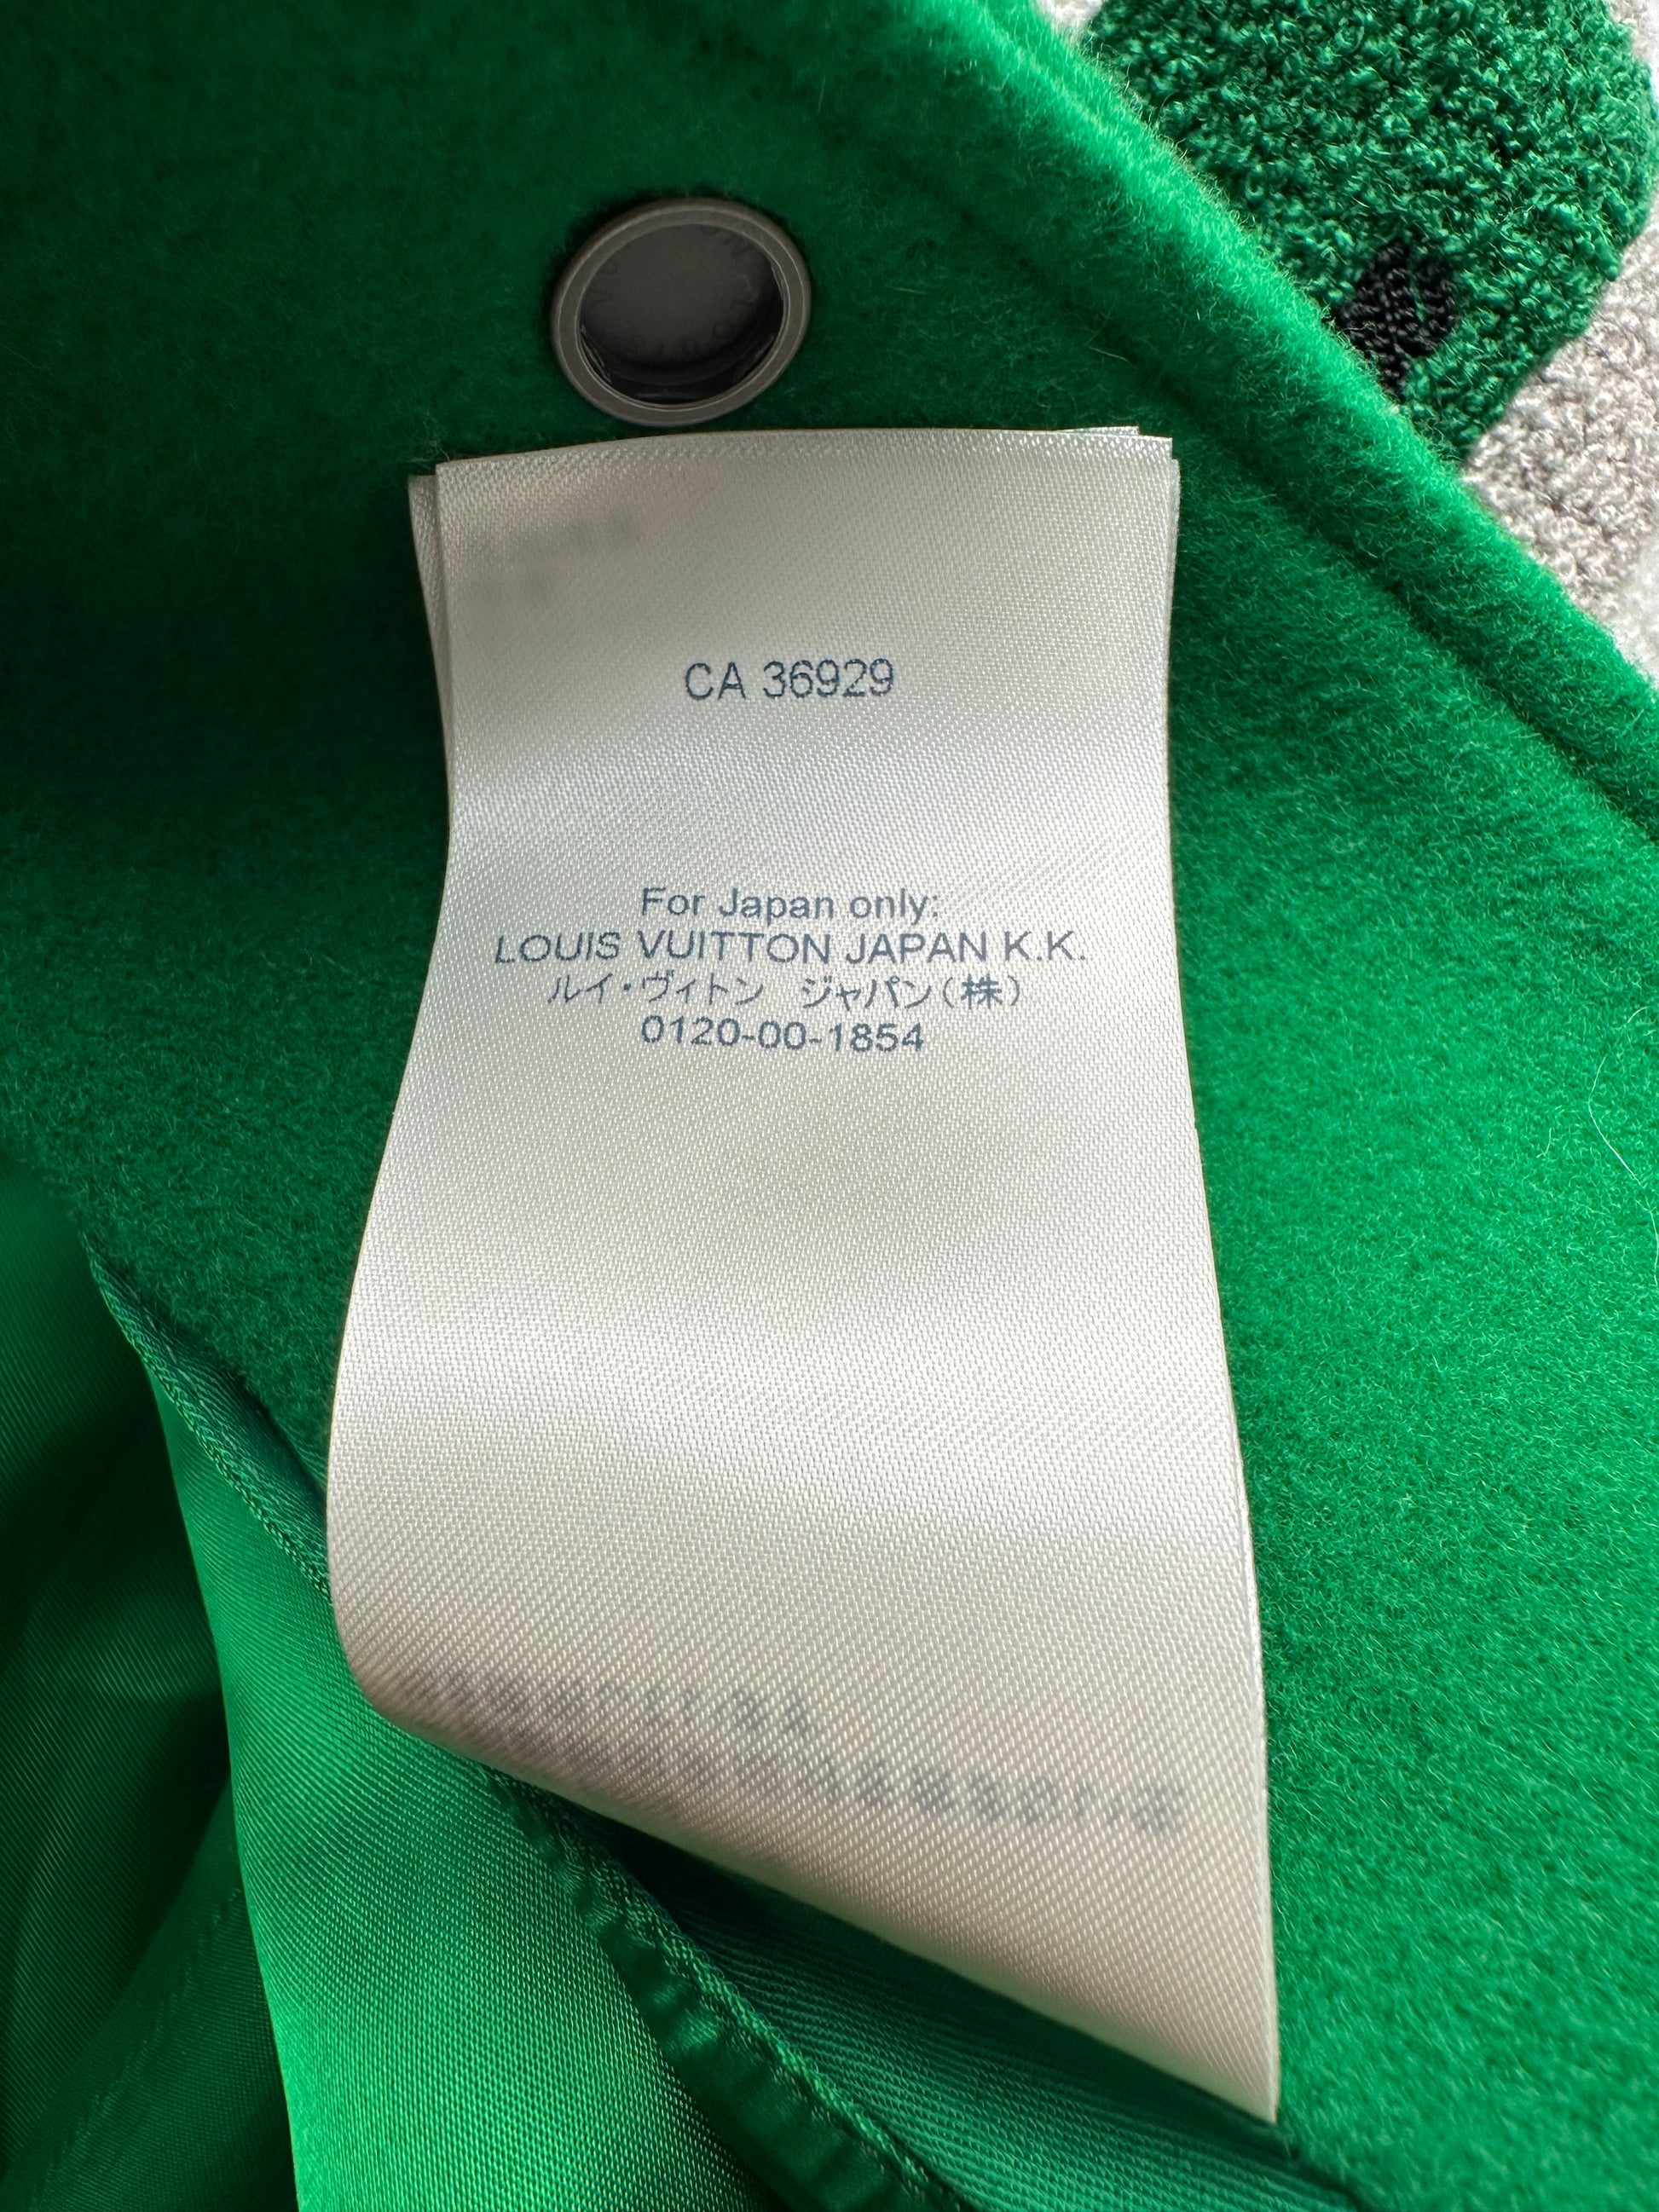 Louis Vuitton Green & White Varsity Leather Jacket